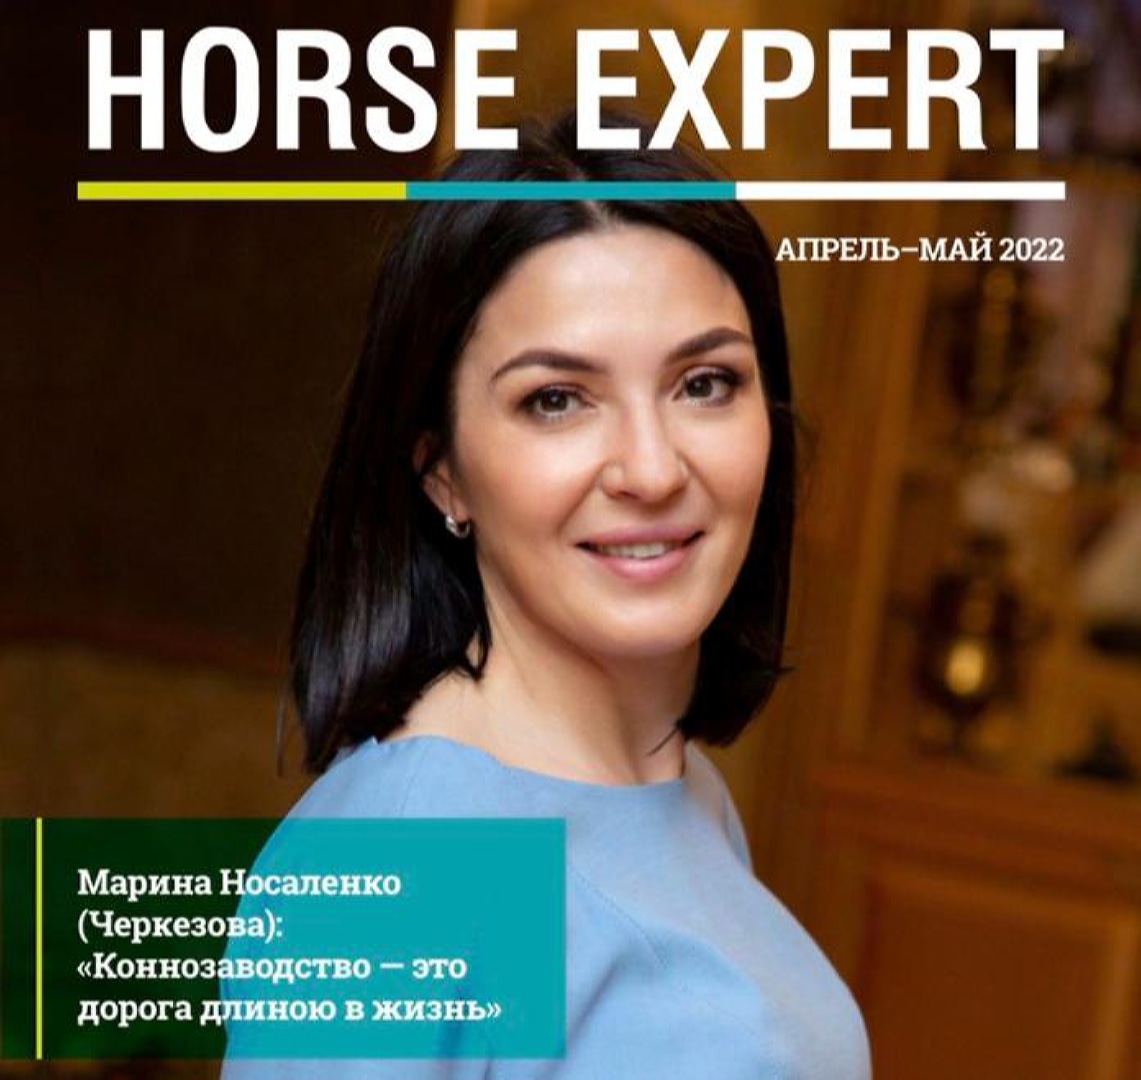 Новый выпуск журнала Horse Expert!